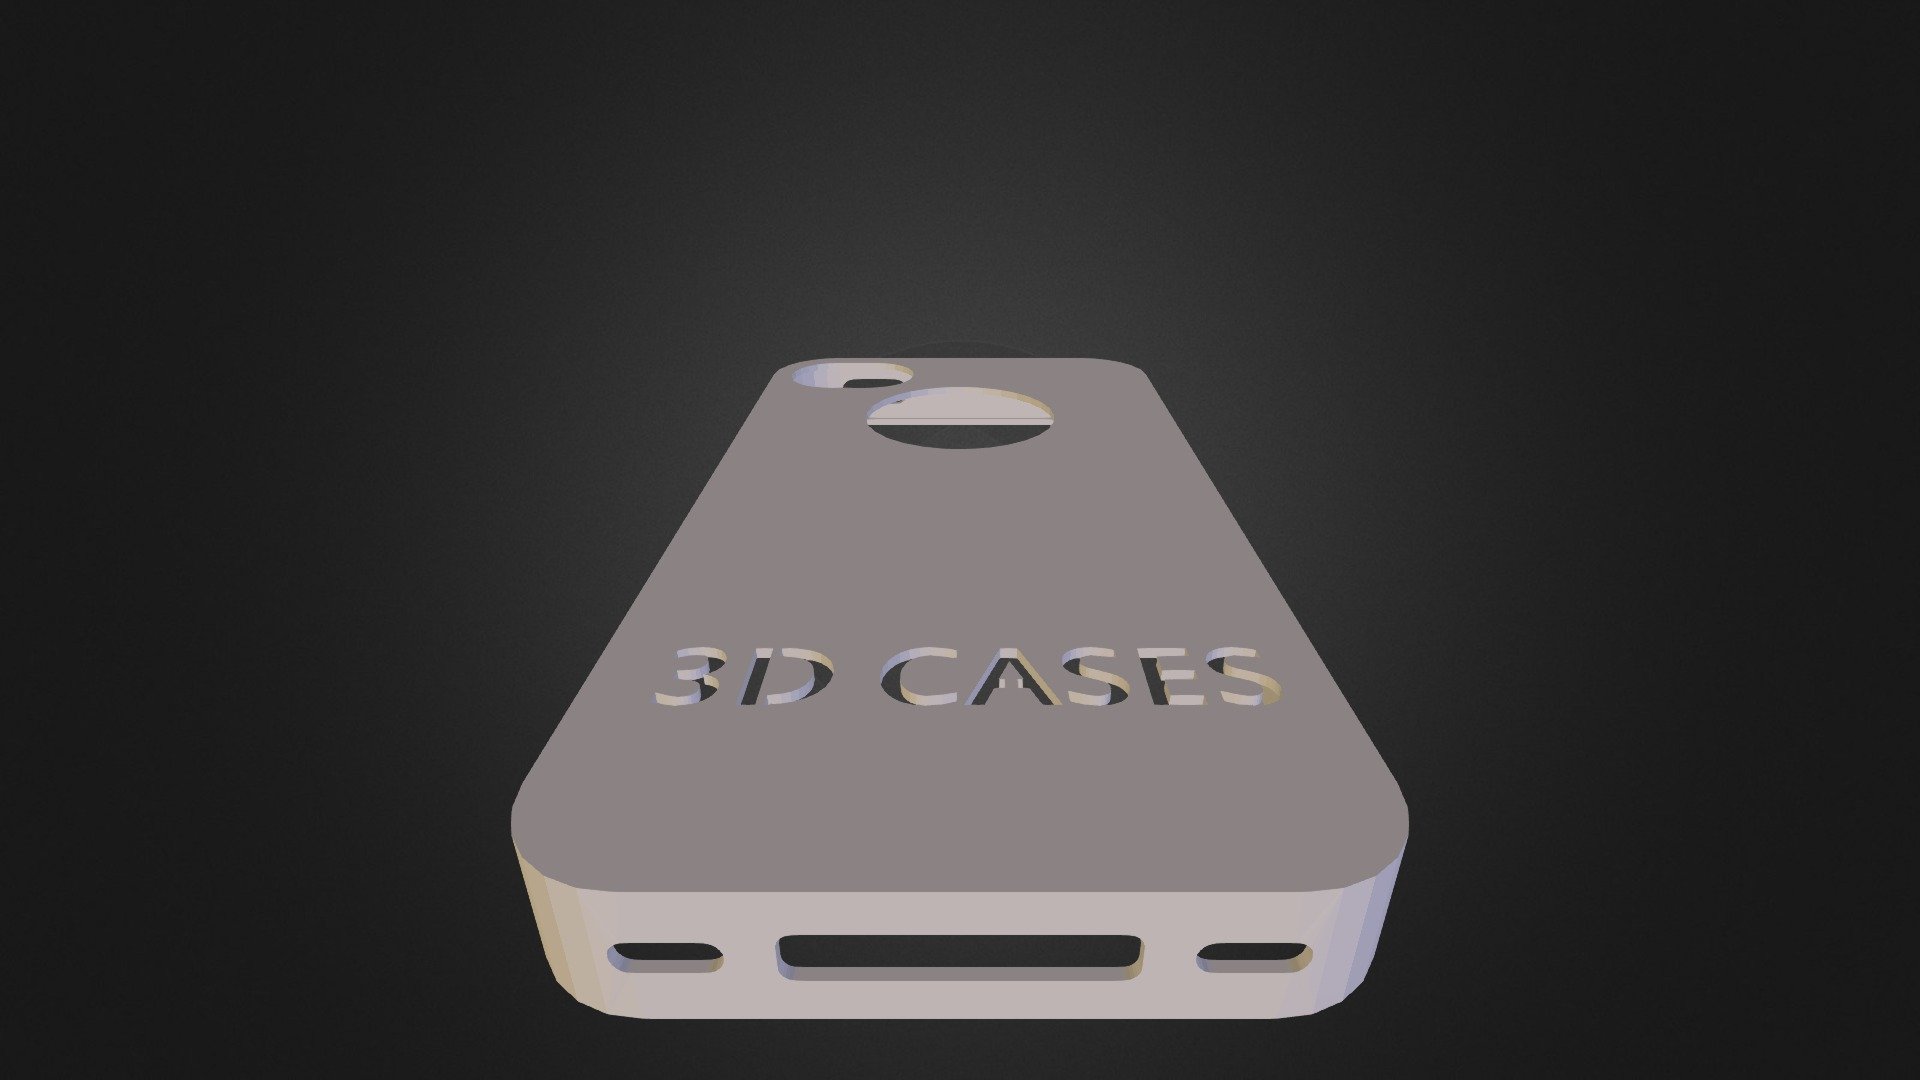 3D CASES